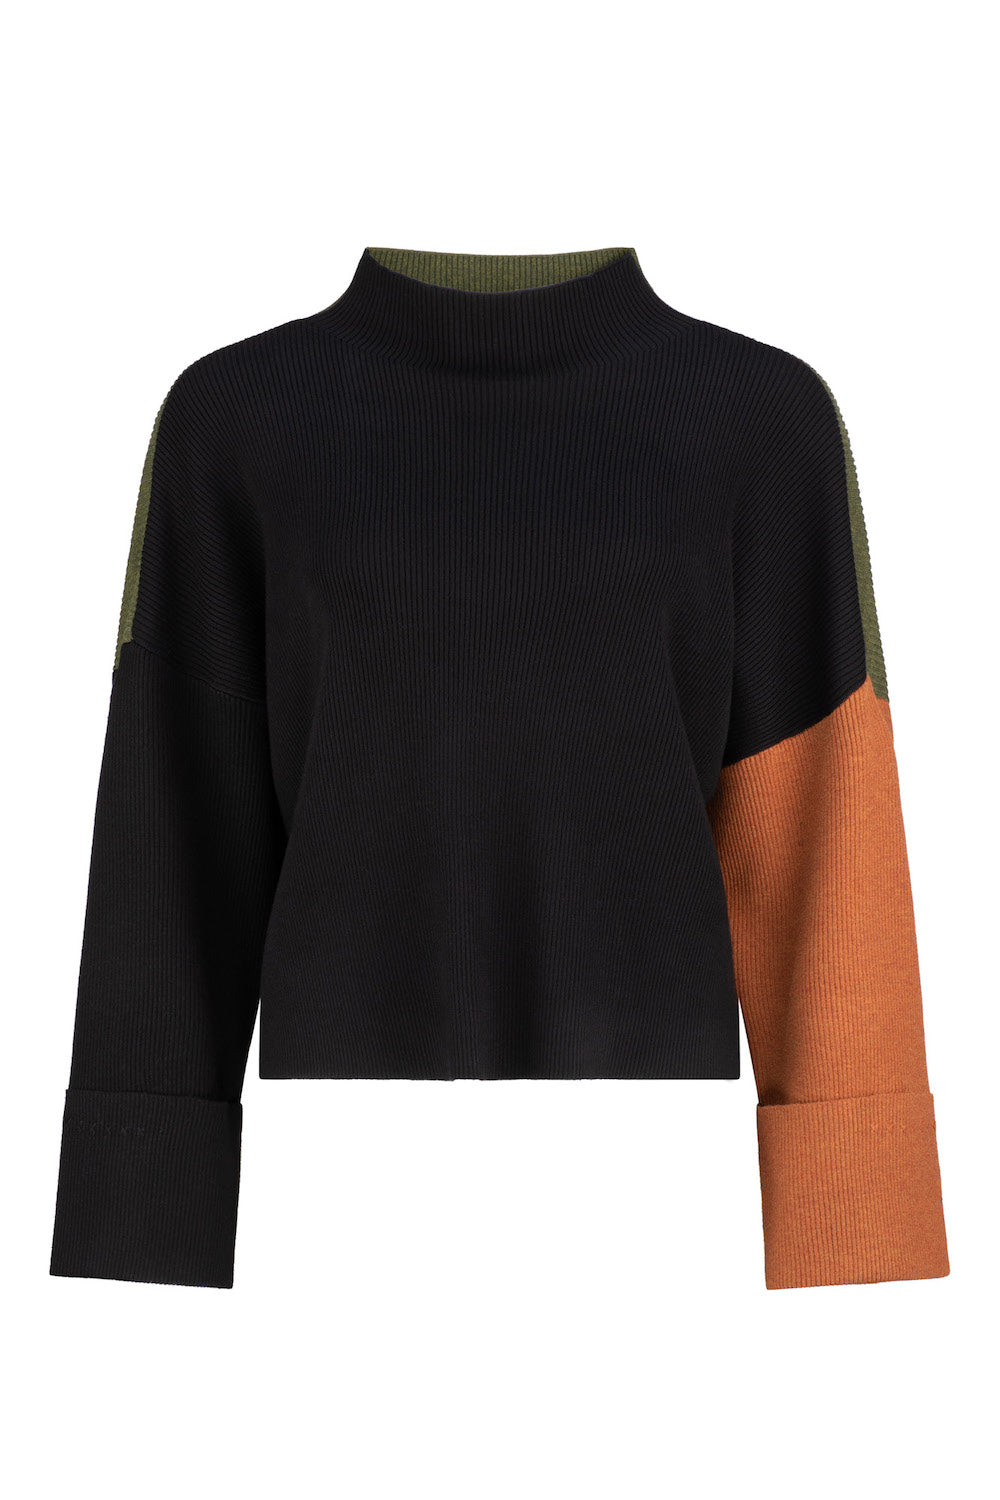 Dref By D Women's Ariel Colourblock Knit Sweater - Black Multi